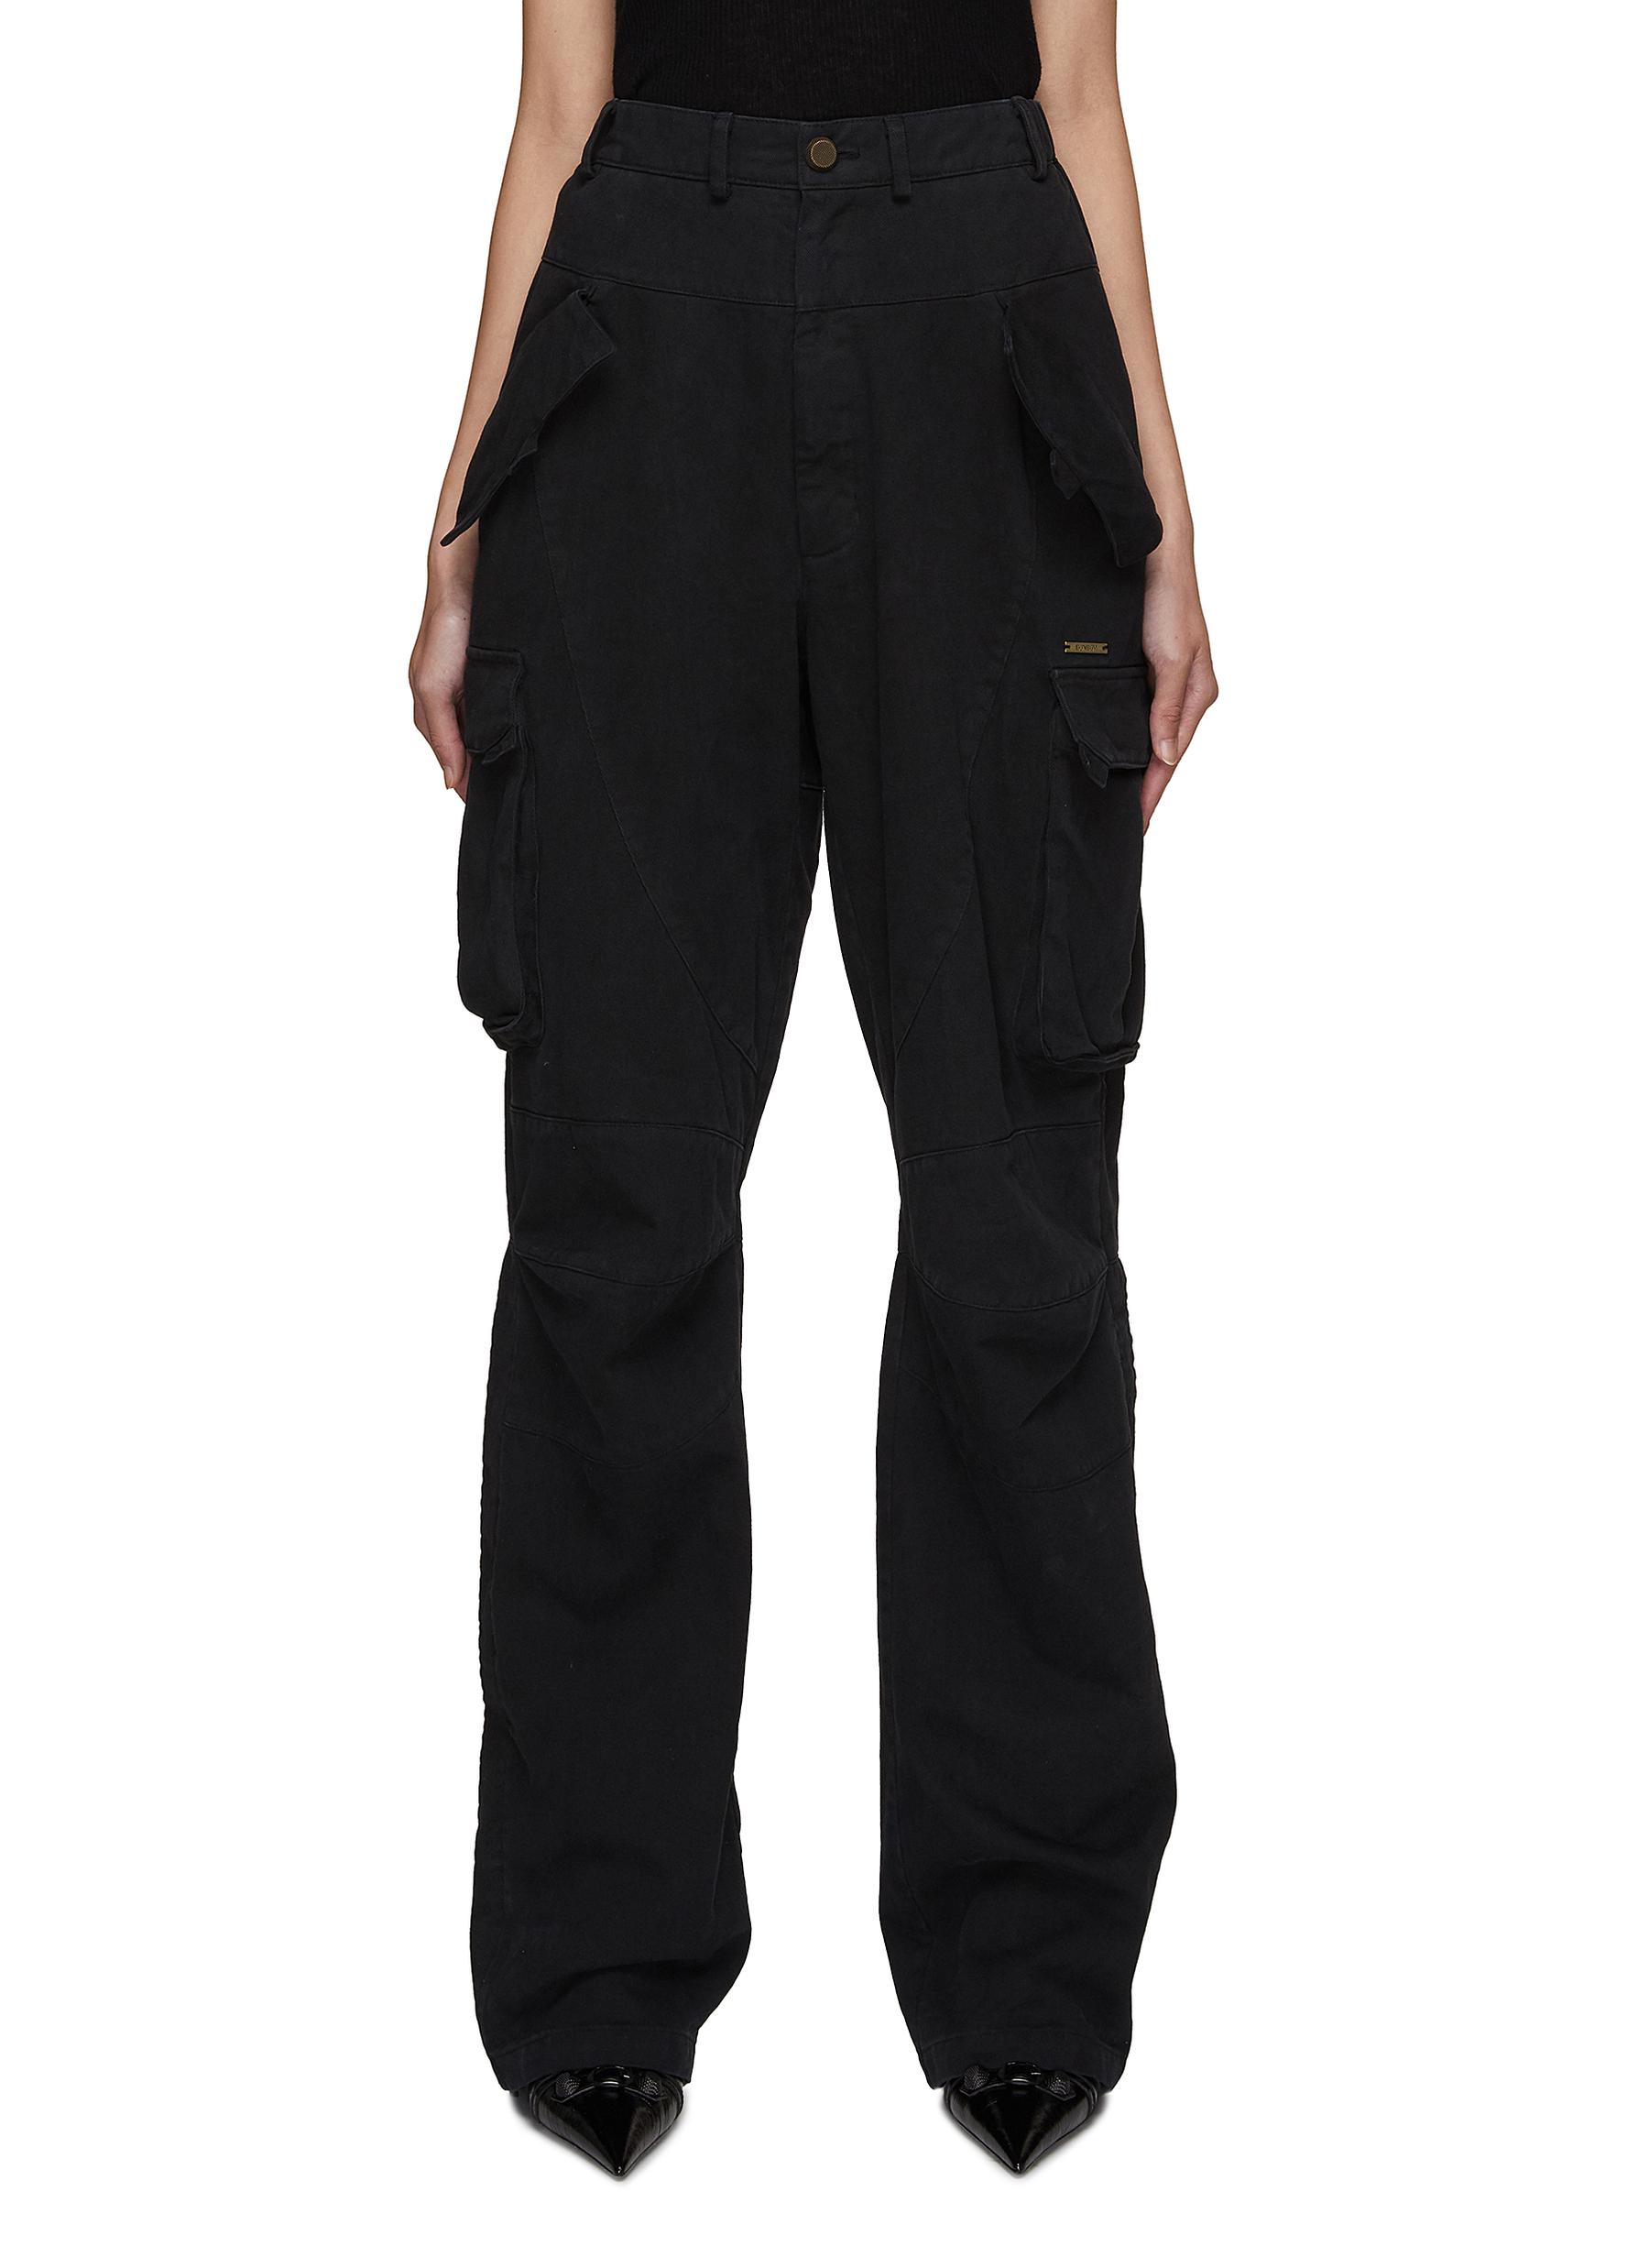 Denim cargo trousers - Black - Ladies